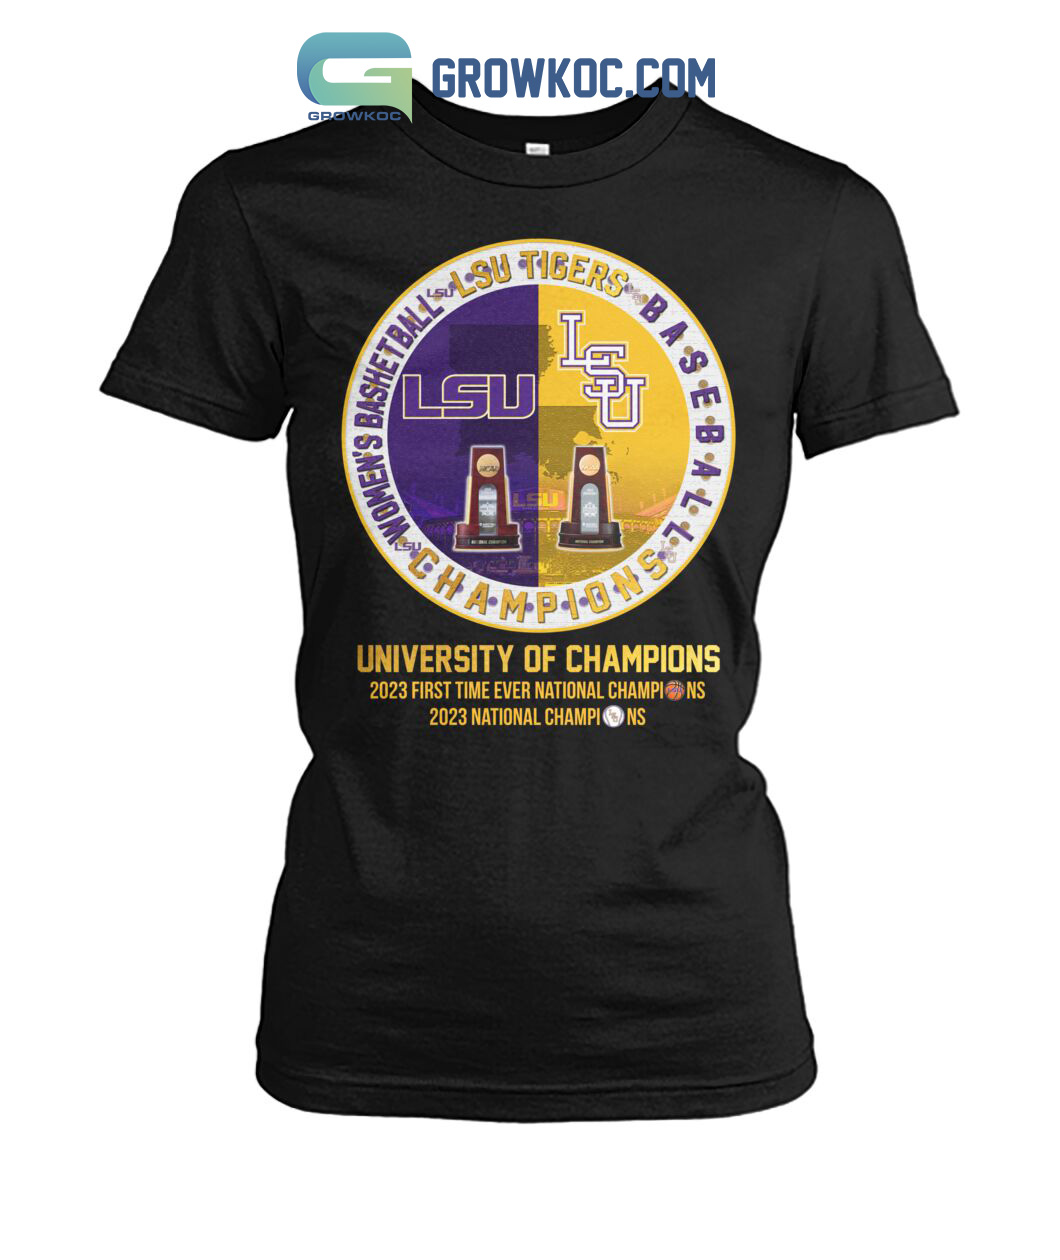 Lsu Tigers Baseball And Women's Basketball University Of Champions